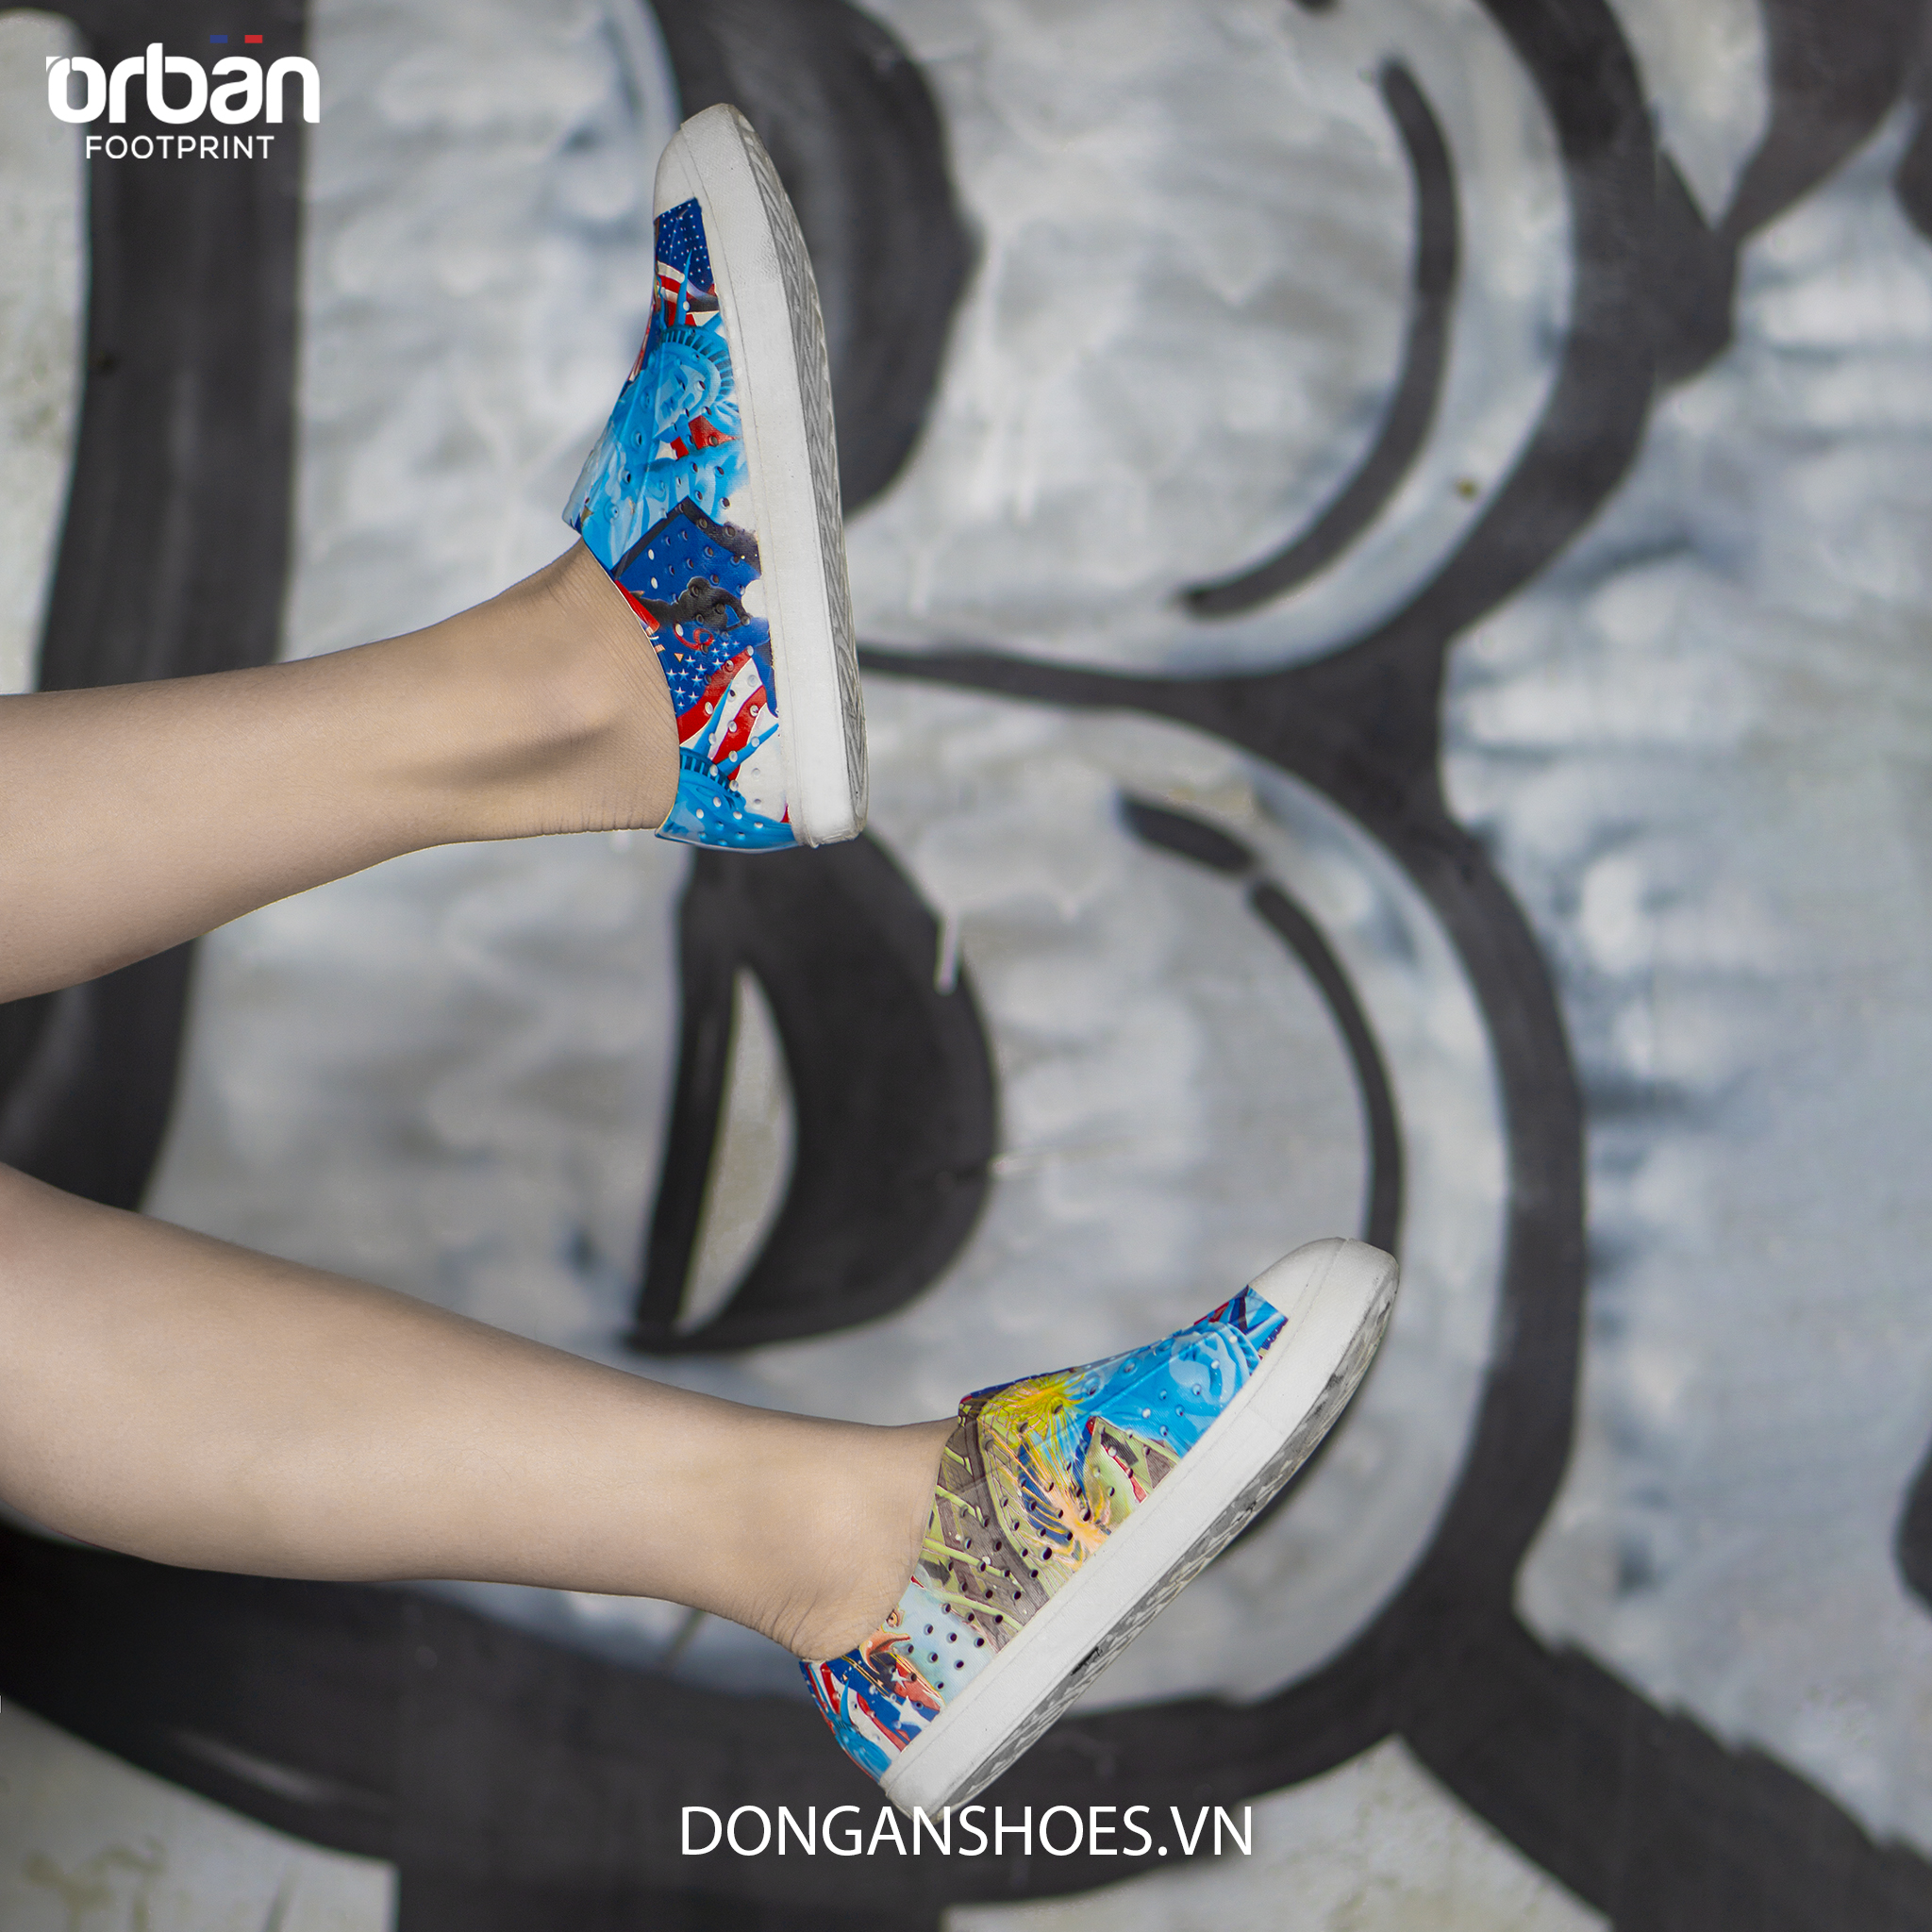 Giày nhựa in hình eva Urban Footpritn D2001 Graphics chính hãng cho trẻ em